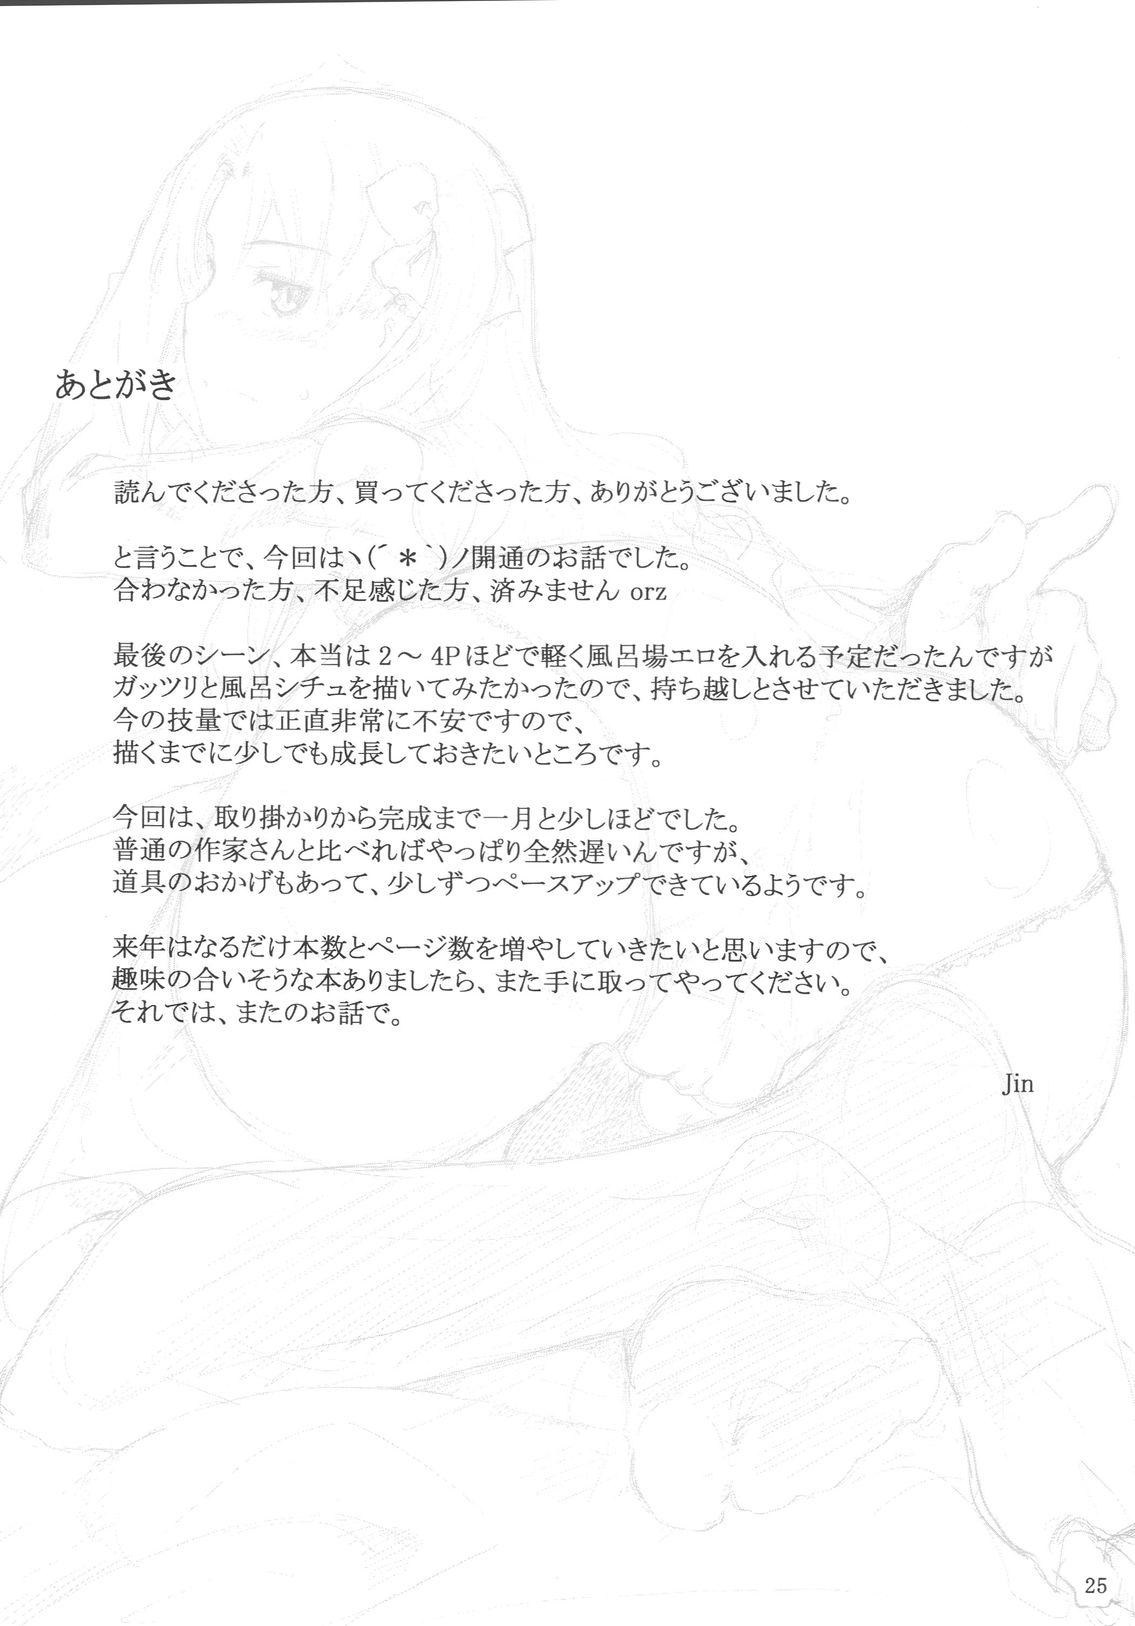 Innocent Tohsaka-ke no Kakei Jijou 5 - Fate stay night Freckles - Page 24